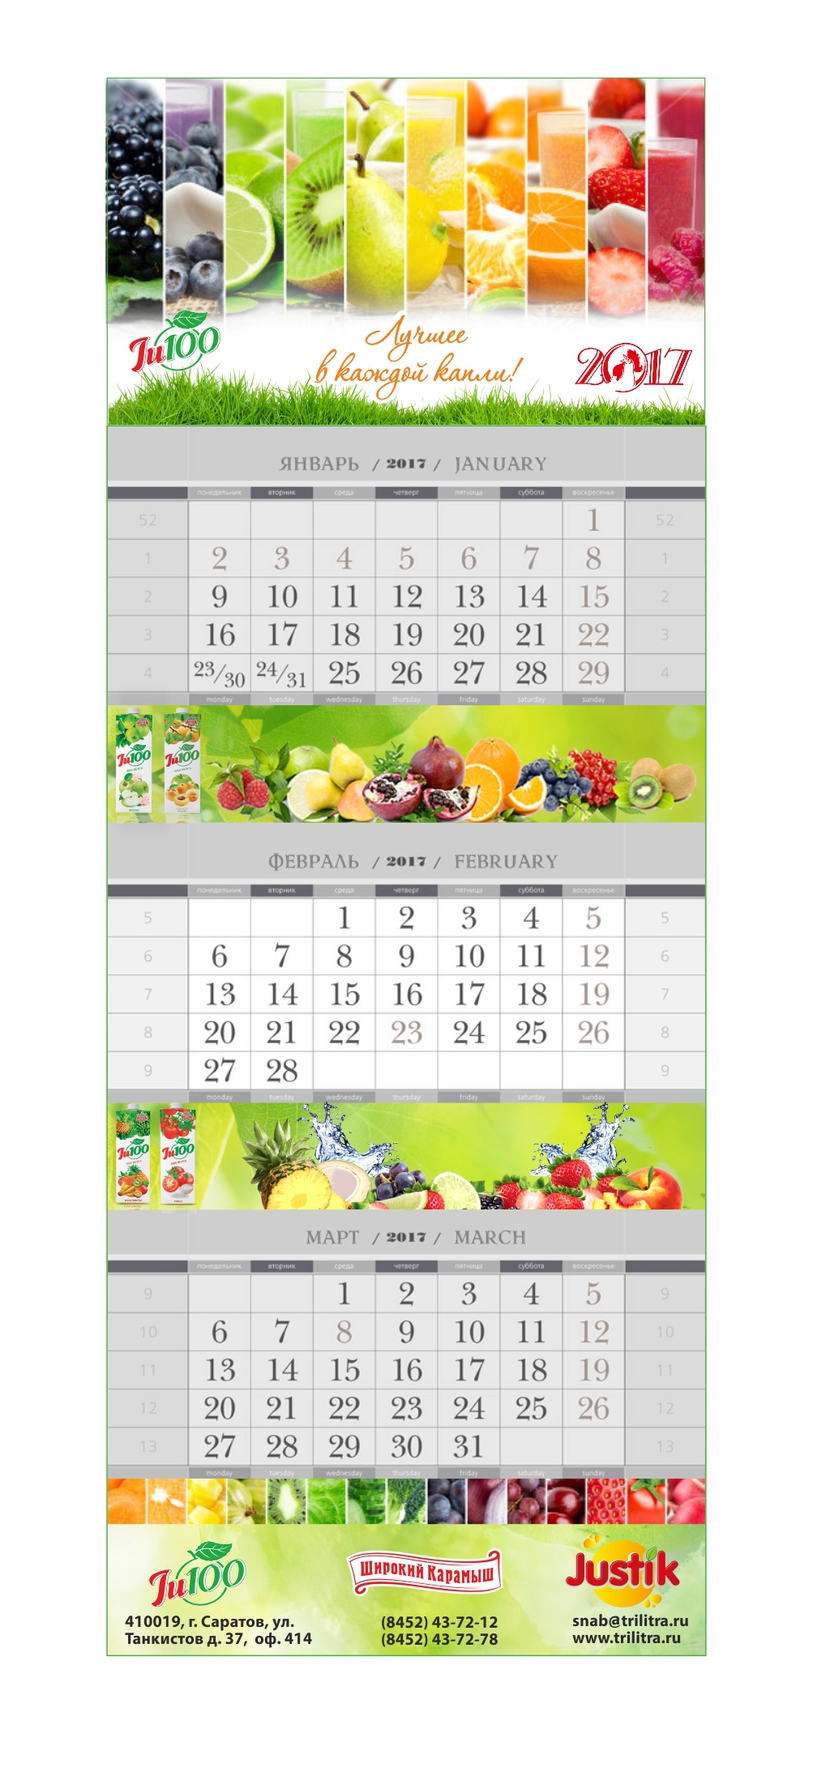 +++ - Дизайн квартального календаря 2017г. для ООО ТК ДЖУСТО (  соки "Широкий Карамыш ")